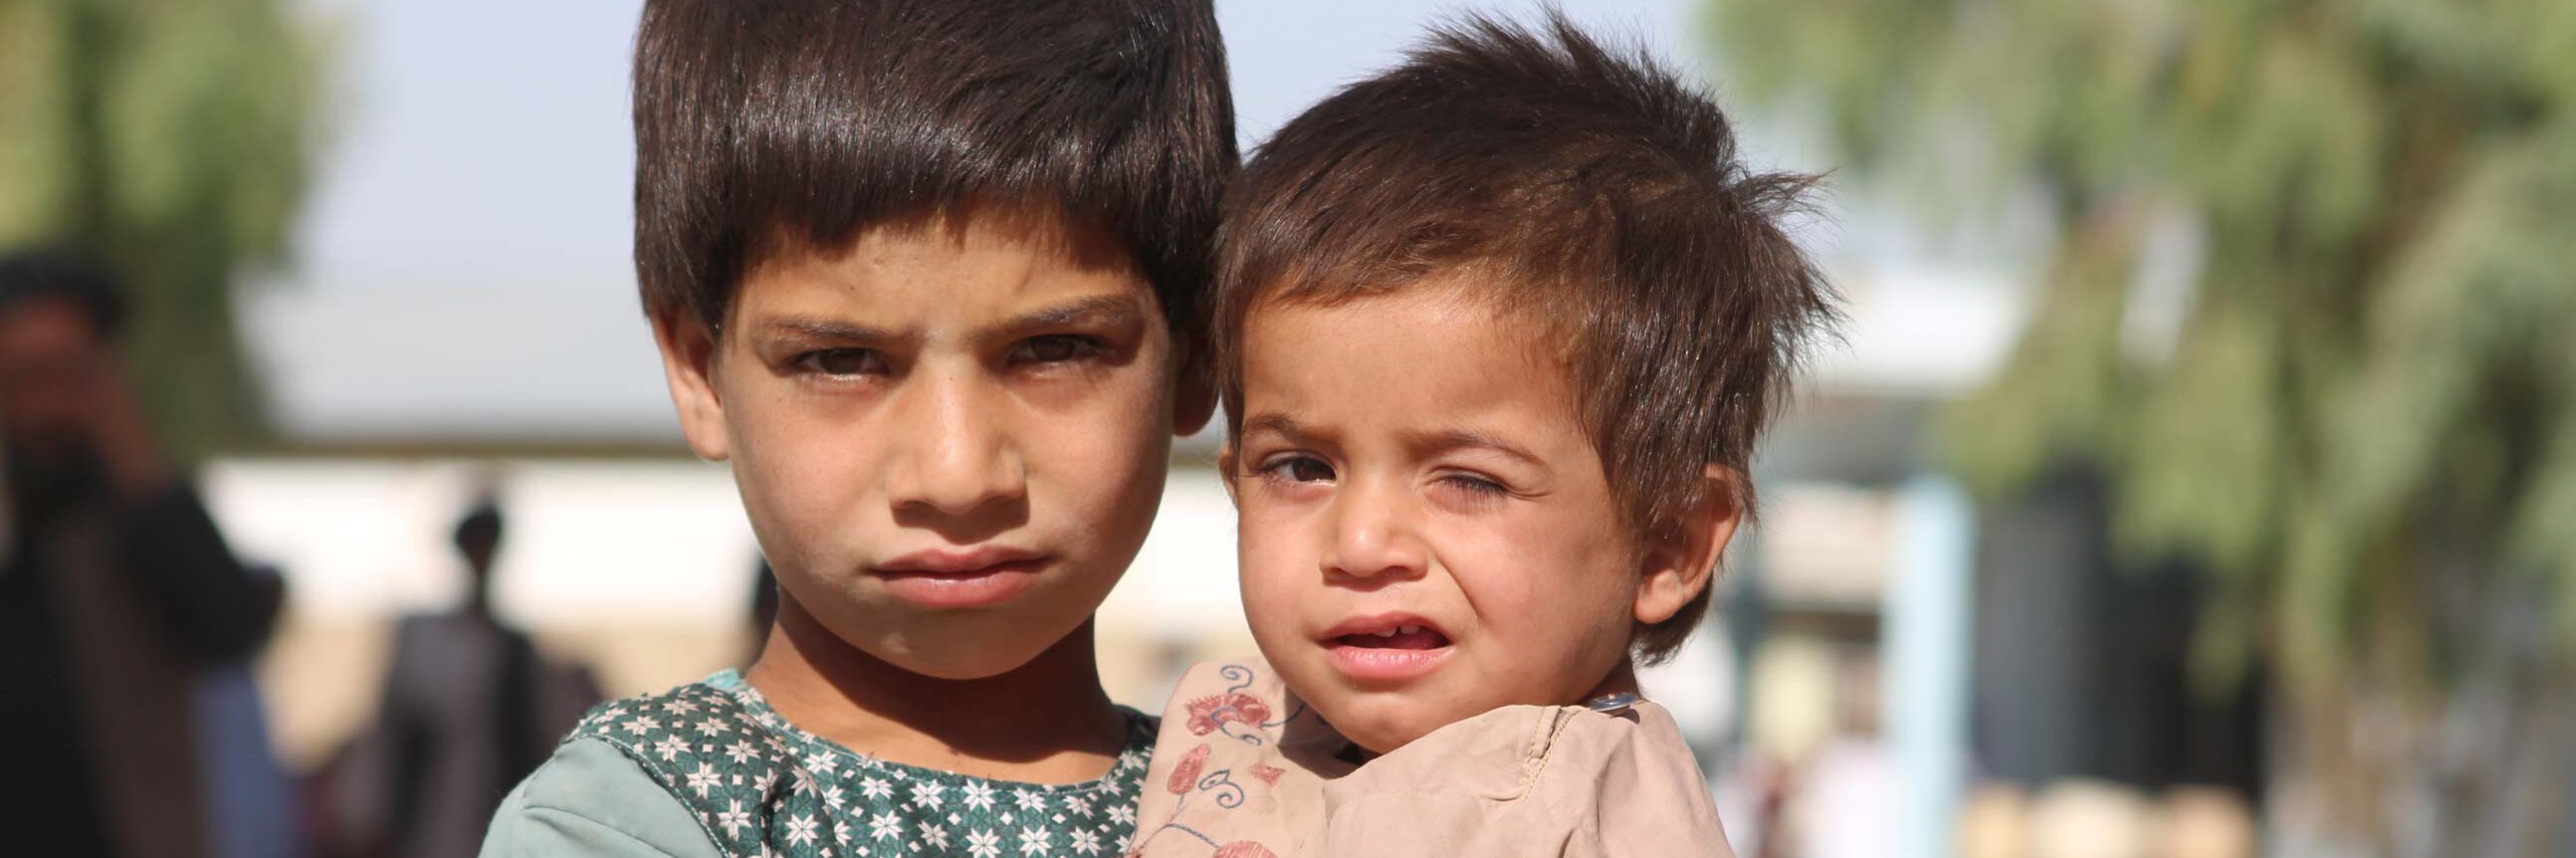 Zwei Brüder in einem afghanischen Flüchtlingslager